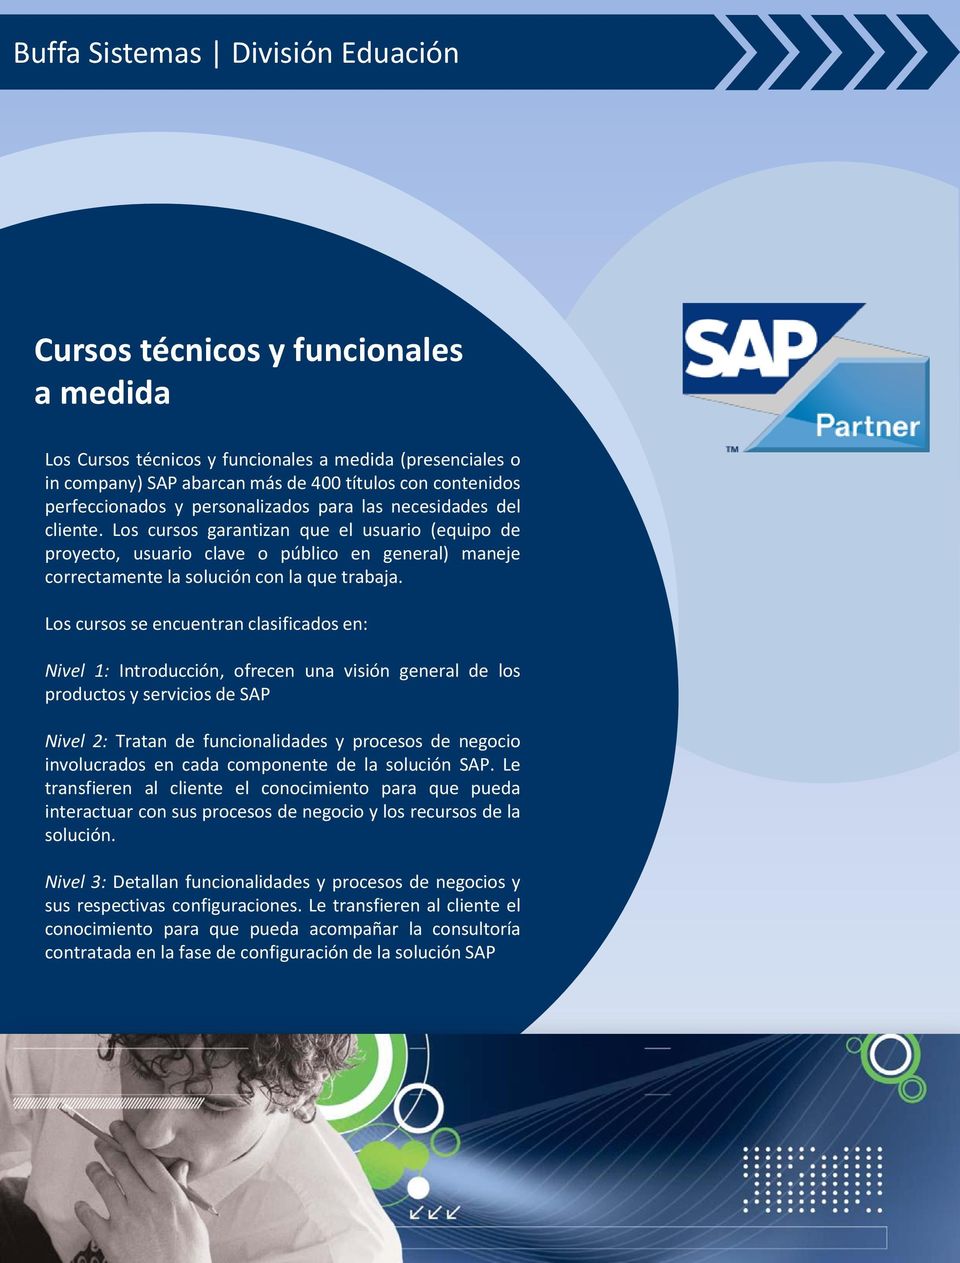 Los cursos se encuentran clasificados en: Nivel 1: Introducción, ofrecen una visión general de los productos y servicios de SAP Nivel 2: Tratan de funcionalidades y procesos de negocio involucrados